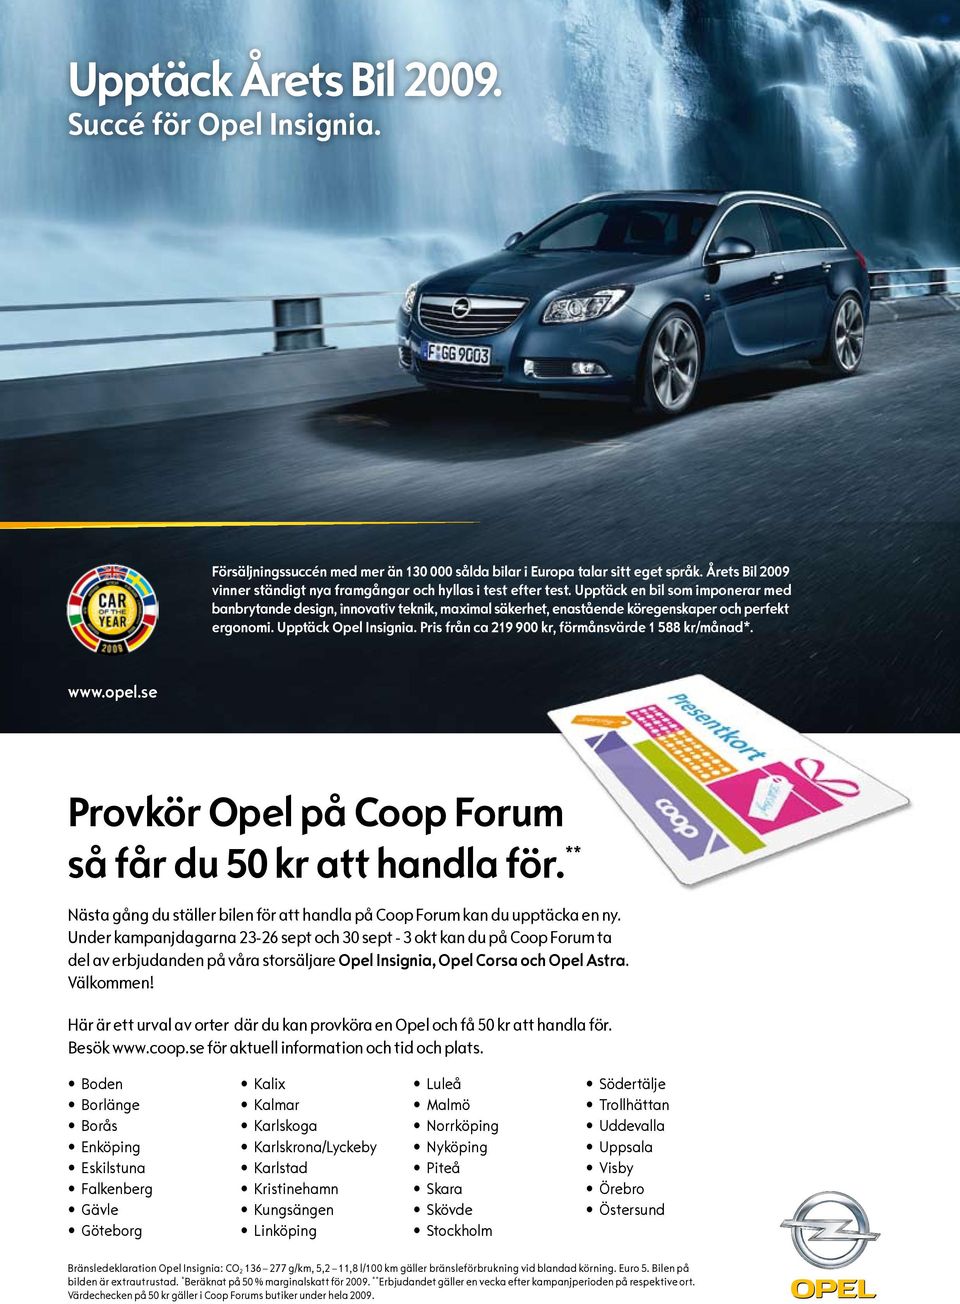 Upptäck en bil som imponerar med banbrytande design, innovativ teknik, maximal säkerhet, enastående köregenskaper och perfekt ergonomi. Upptäck Opel Insignia.